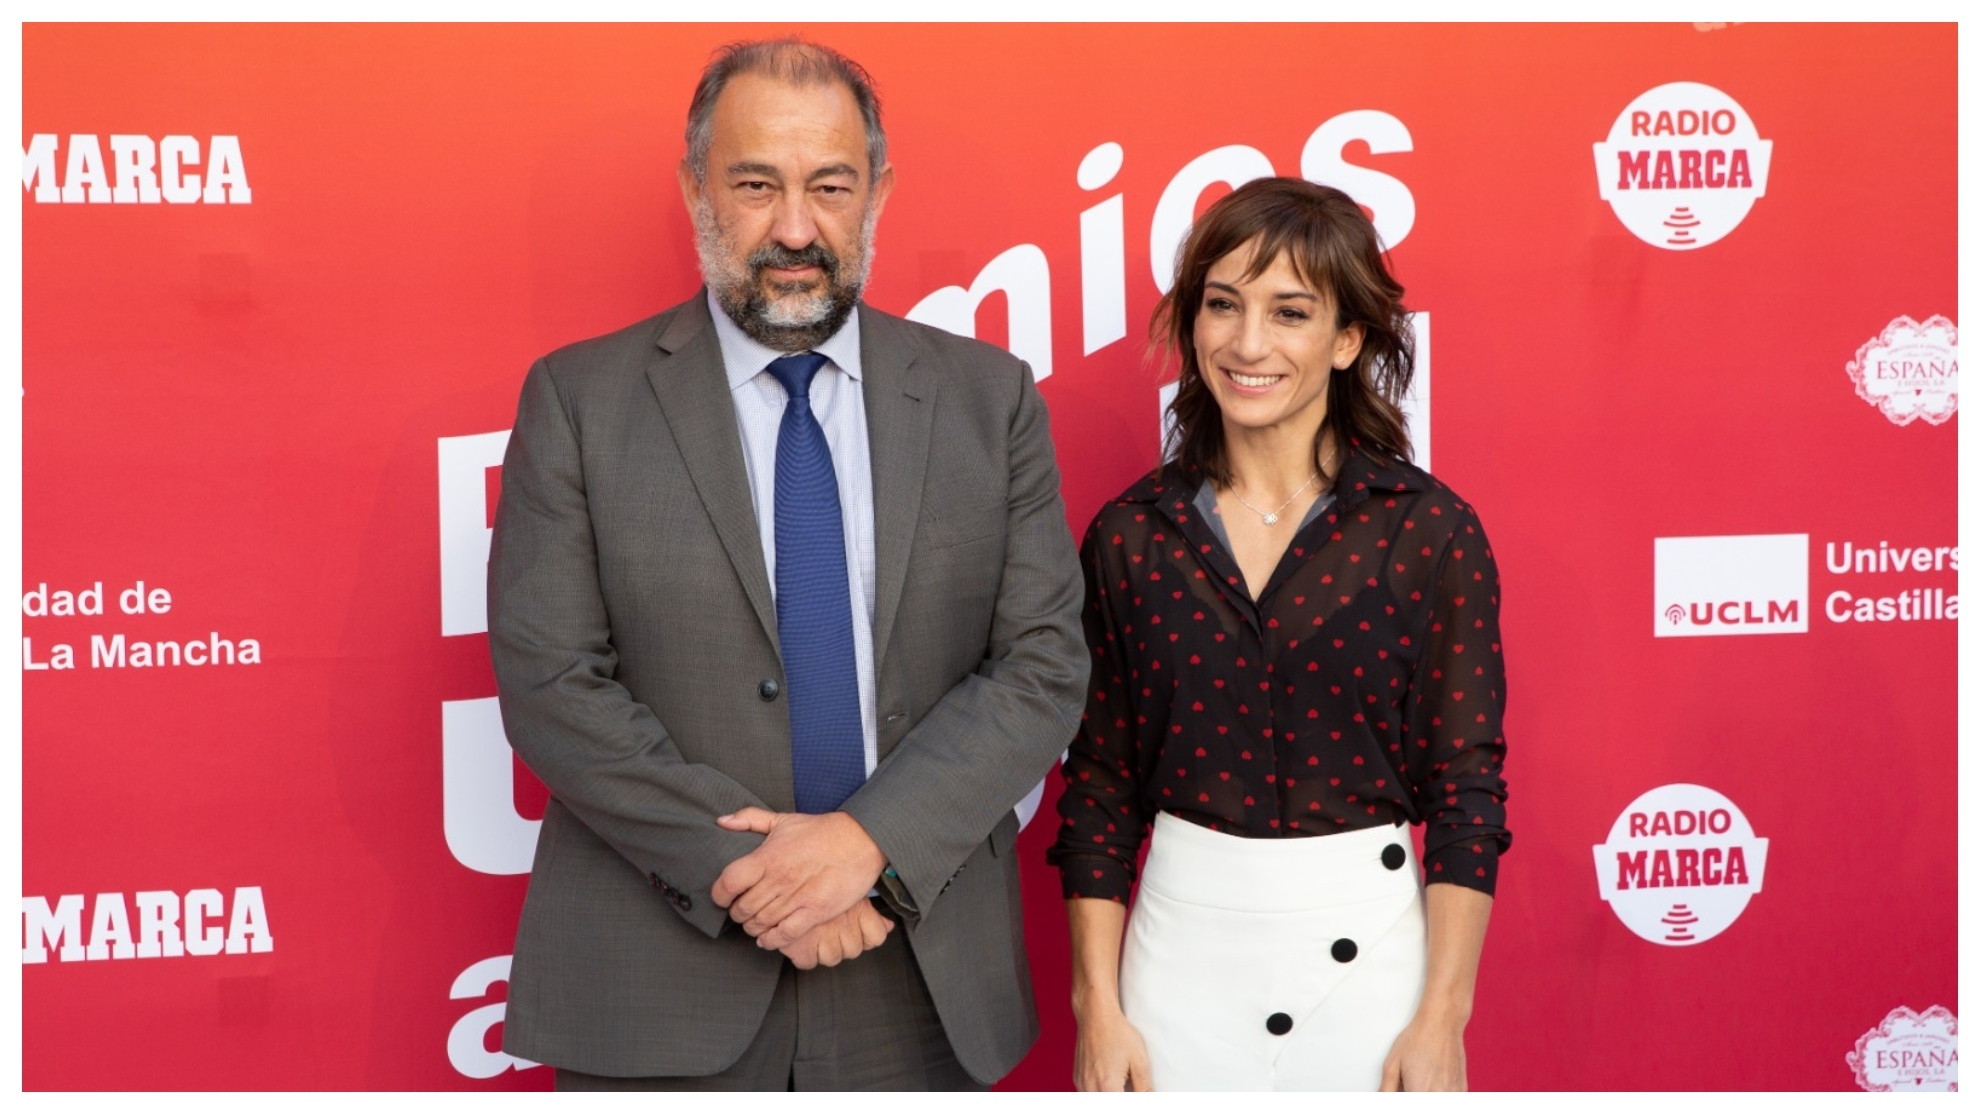 Sandra Snchez junto a Jos Julin Garde, rector de la Universidad de Castilla-La Mancha.